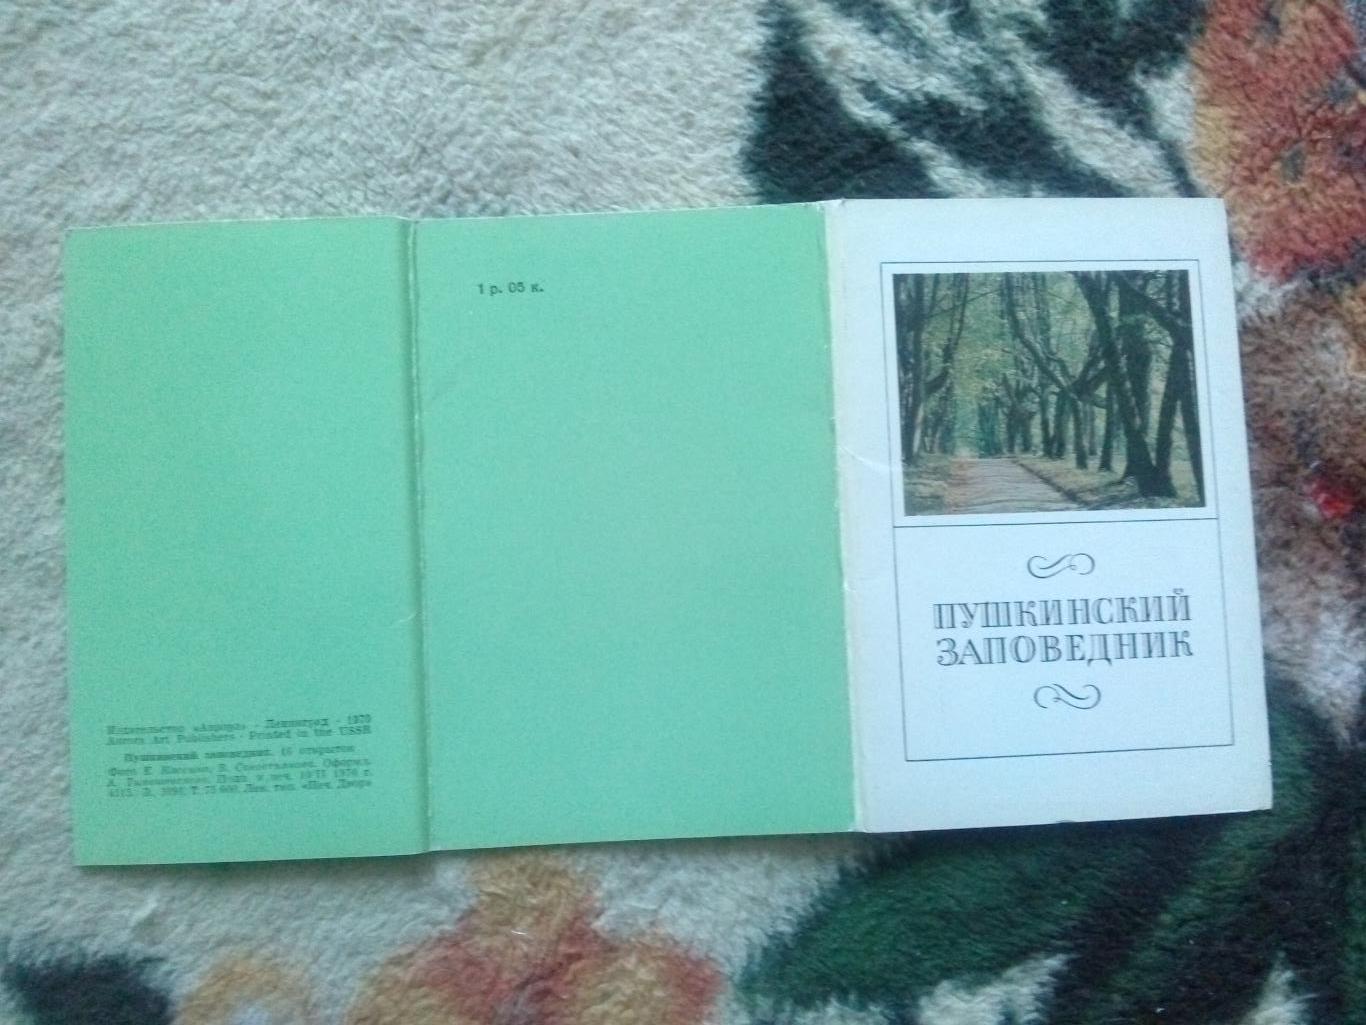 Пушкинский заповедник 1970 г. полный набор - 16 открыток (Ленинград Пушкин) 1